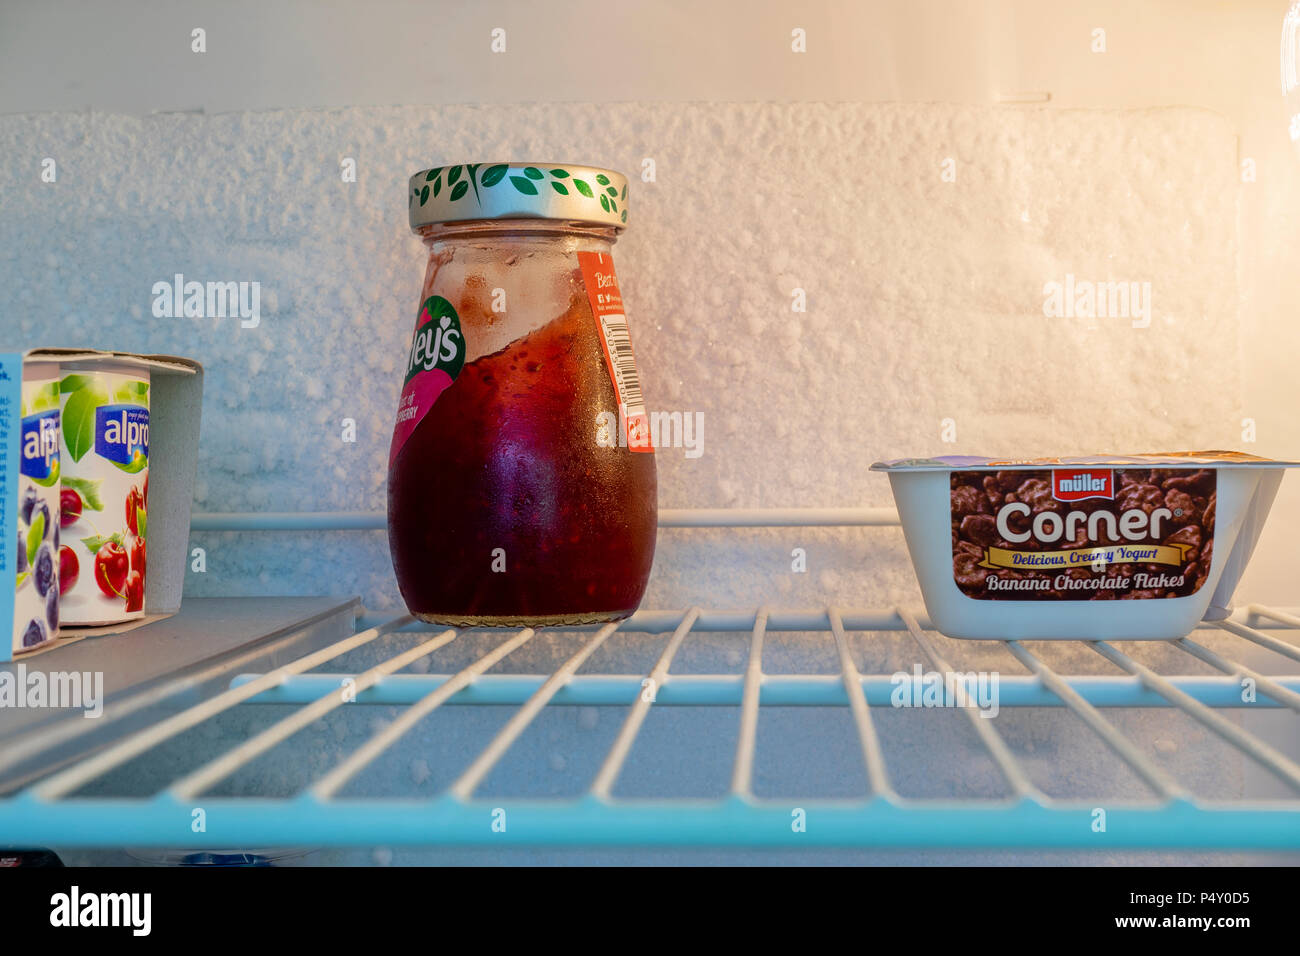 Contenuto su un ripiano interno di un frigorifero con uno strato di ghiaccio che si è accumulato sulla parete del frigorifero Foto Stock